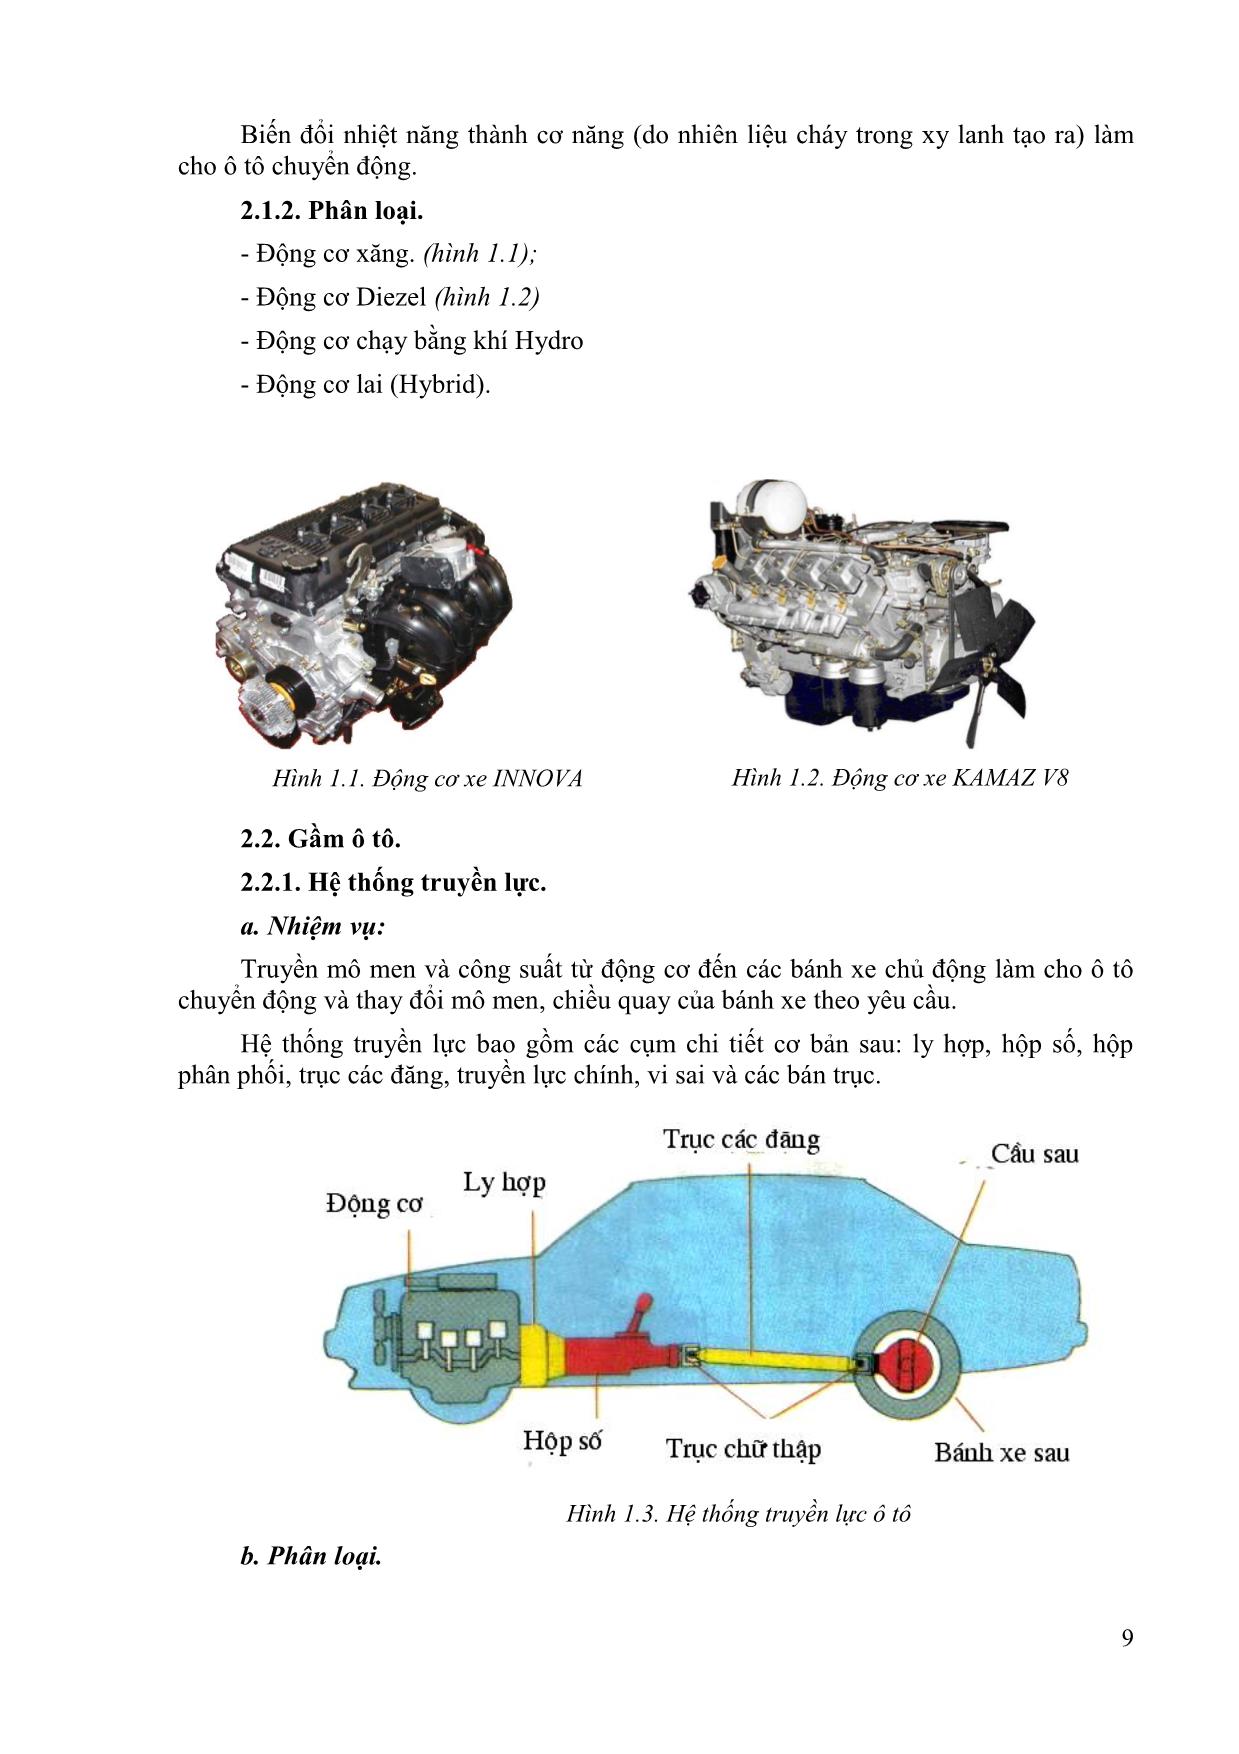 Giáo trình mô đun Kỹ thuật chung về ô tô và công nghệ sửa chữa trang 7